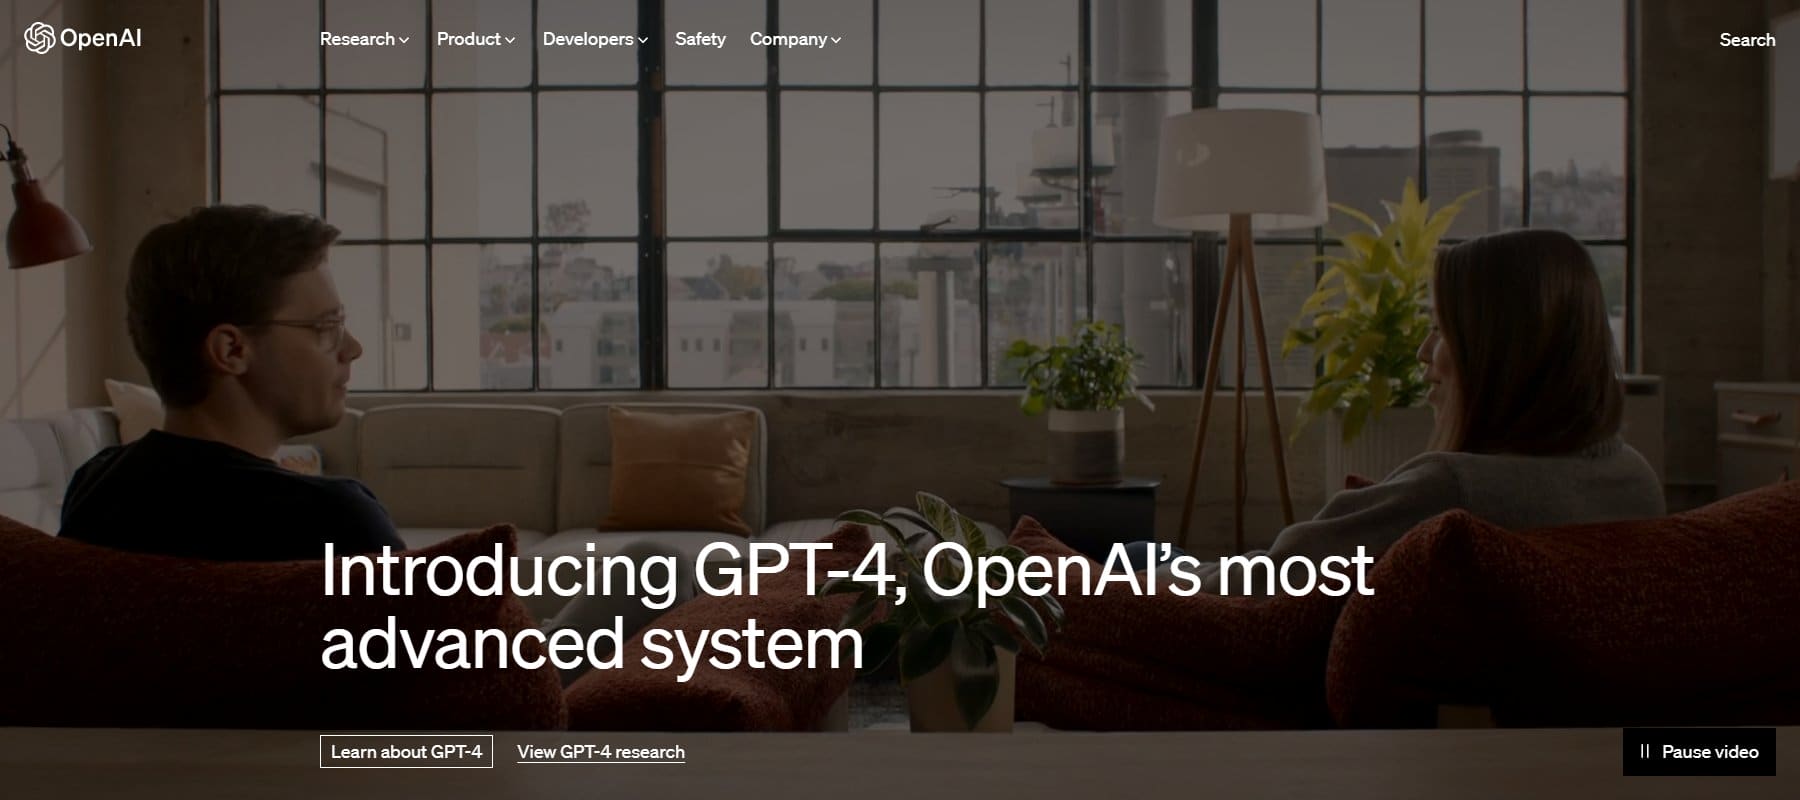 صفحة ChatGPT الرئيسية لـ OpenAI أبريل 2023